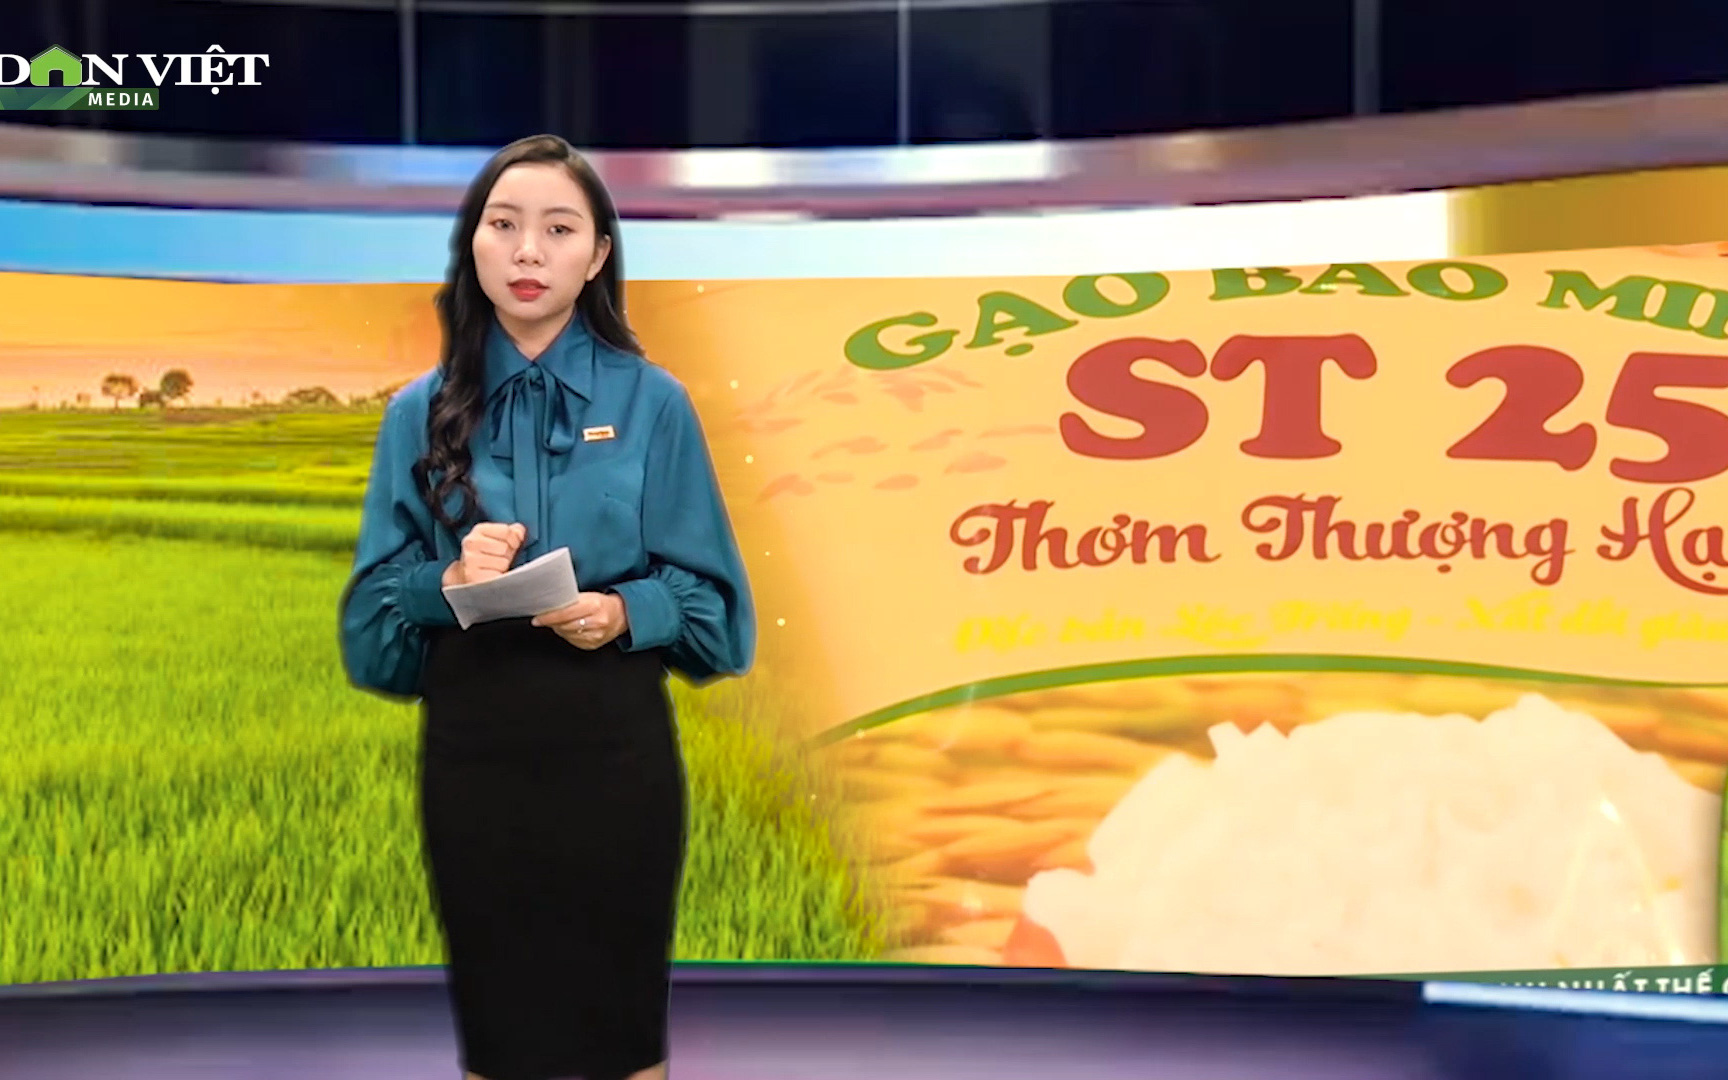 Bản tin Thời sự Dân Việt 24/4: Việt Nam liệu có mất thương hiệu gạo ST25 vào tay doanh nghiệp Mỹ?